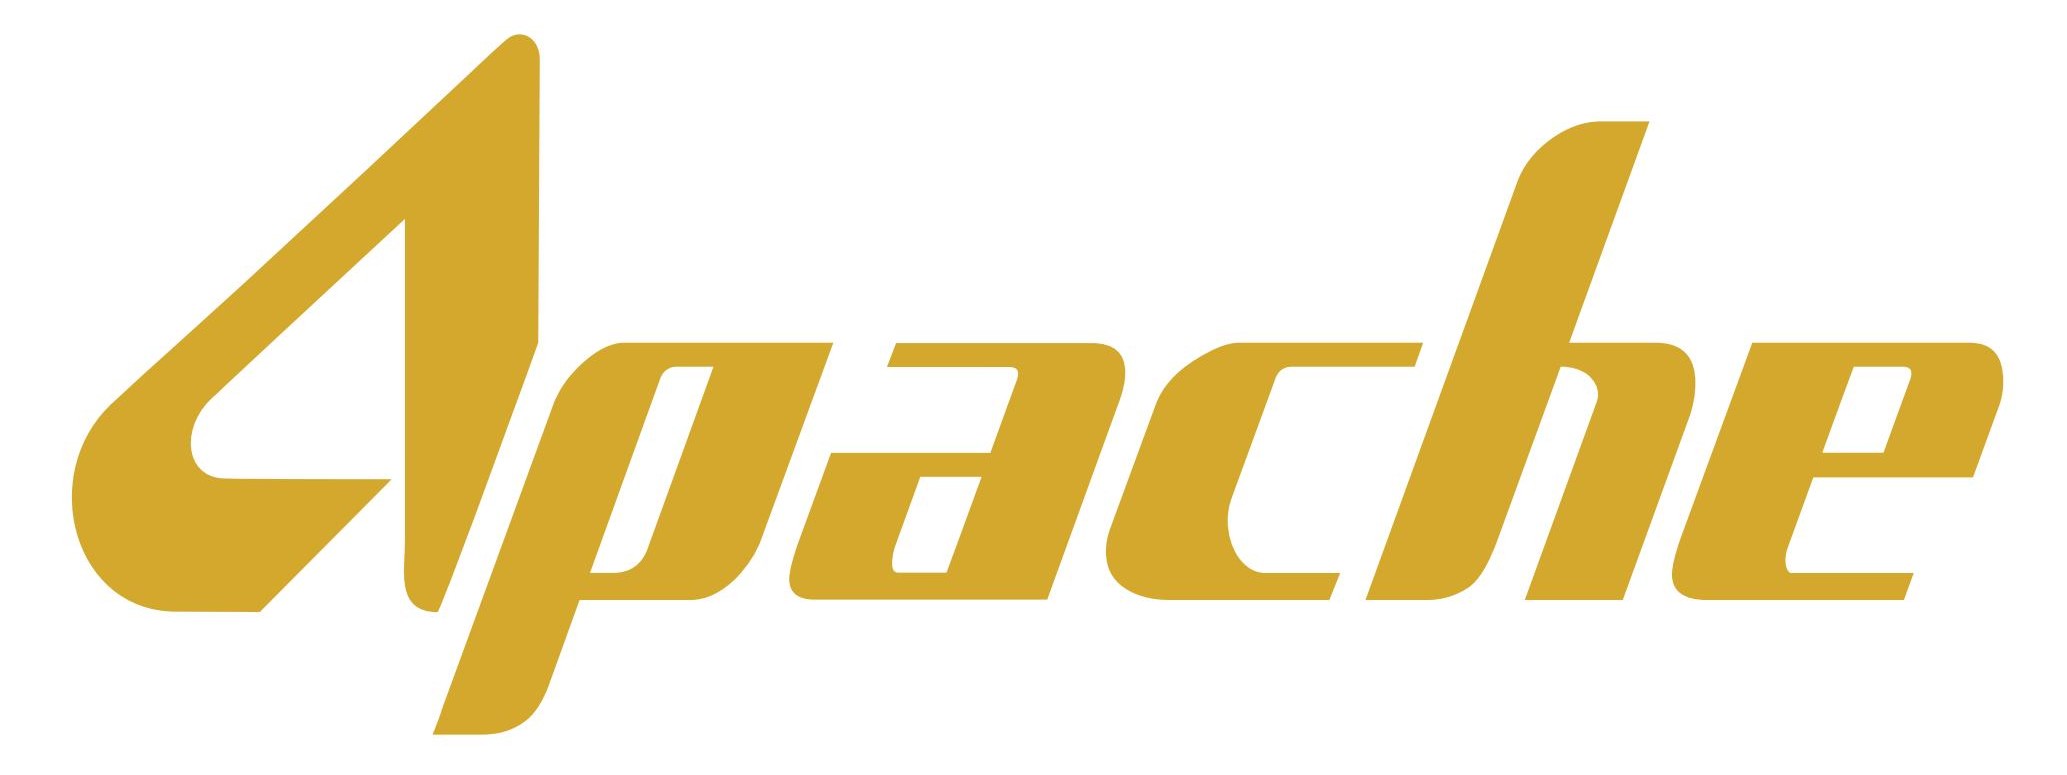 Apaches Logo photo - 1